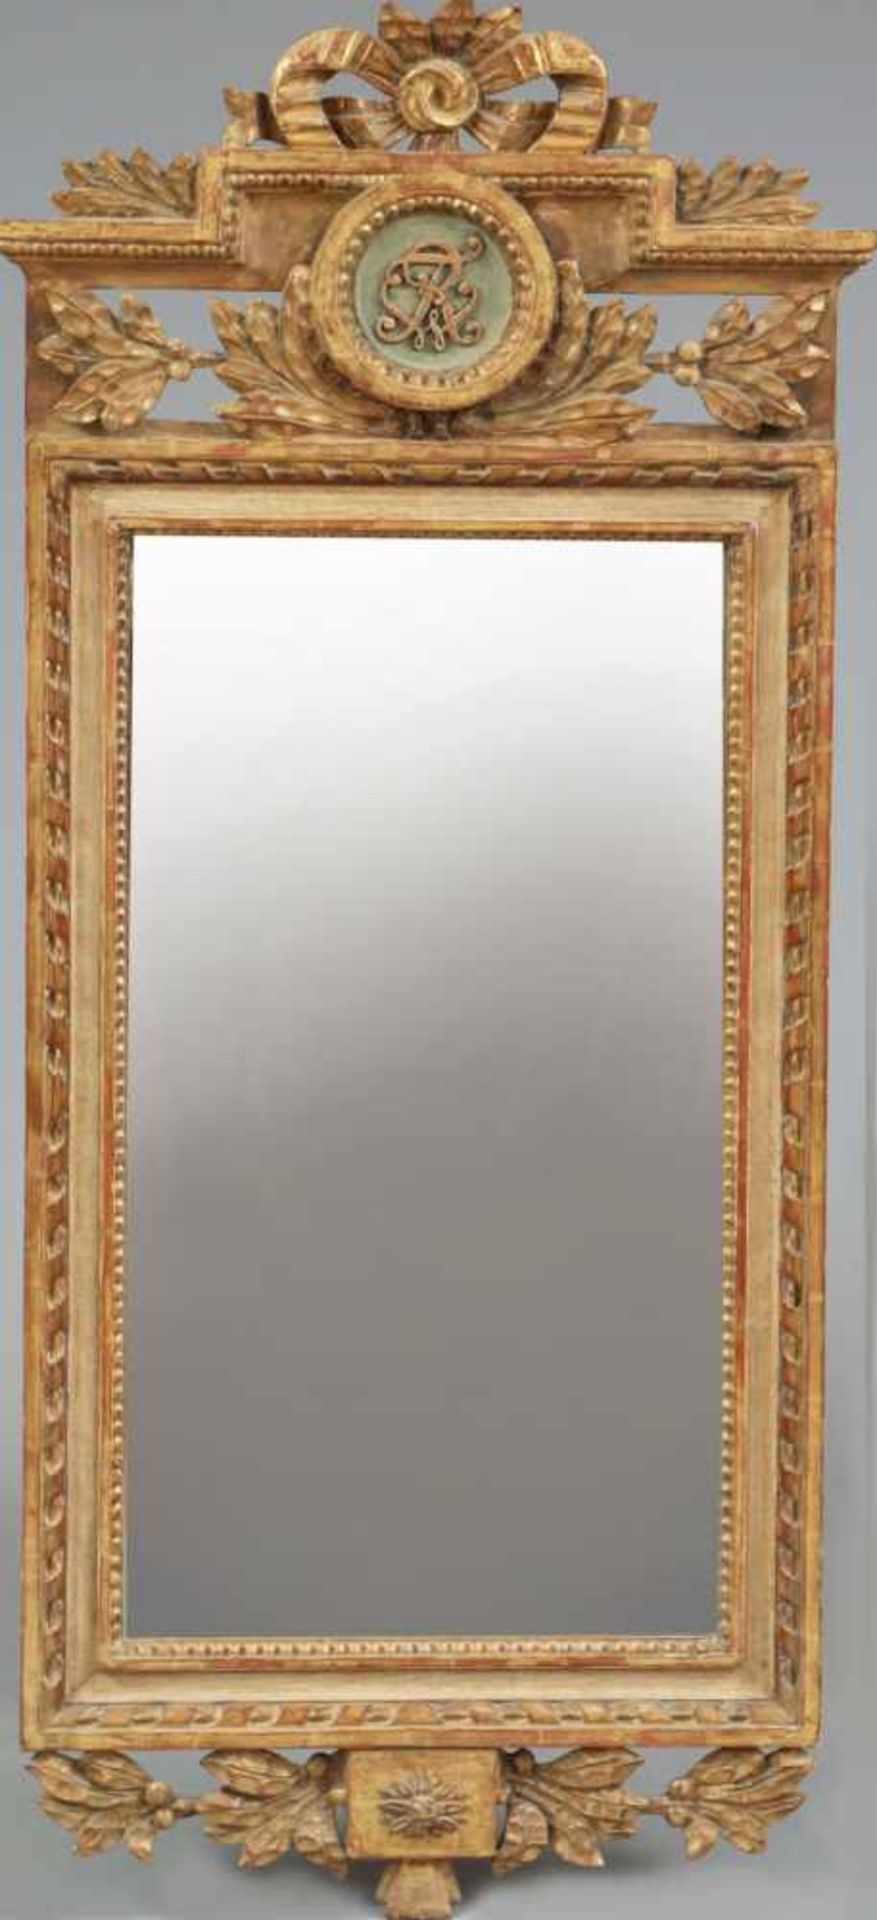 Spiegel im Stile des Empire mit Königsmonogramm FWR (Friedrich Wilhelm Rex) 19. Jahrhundert, hoher,